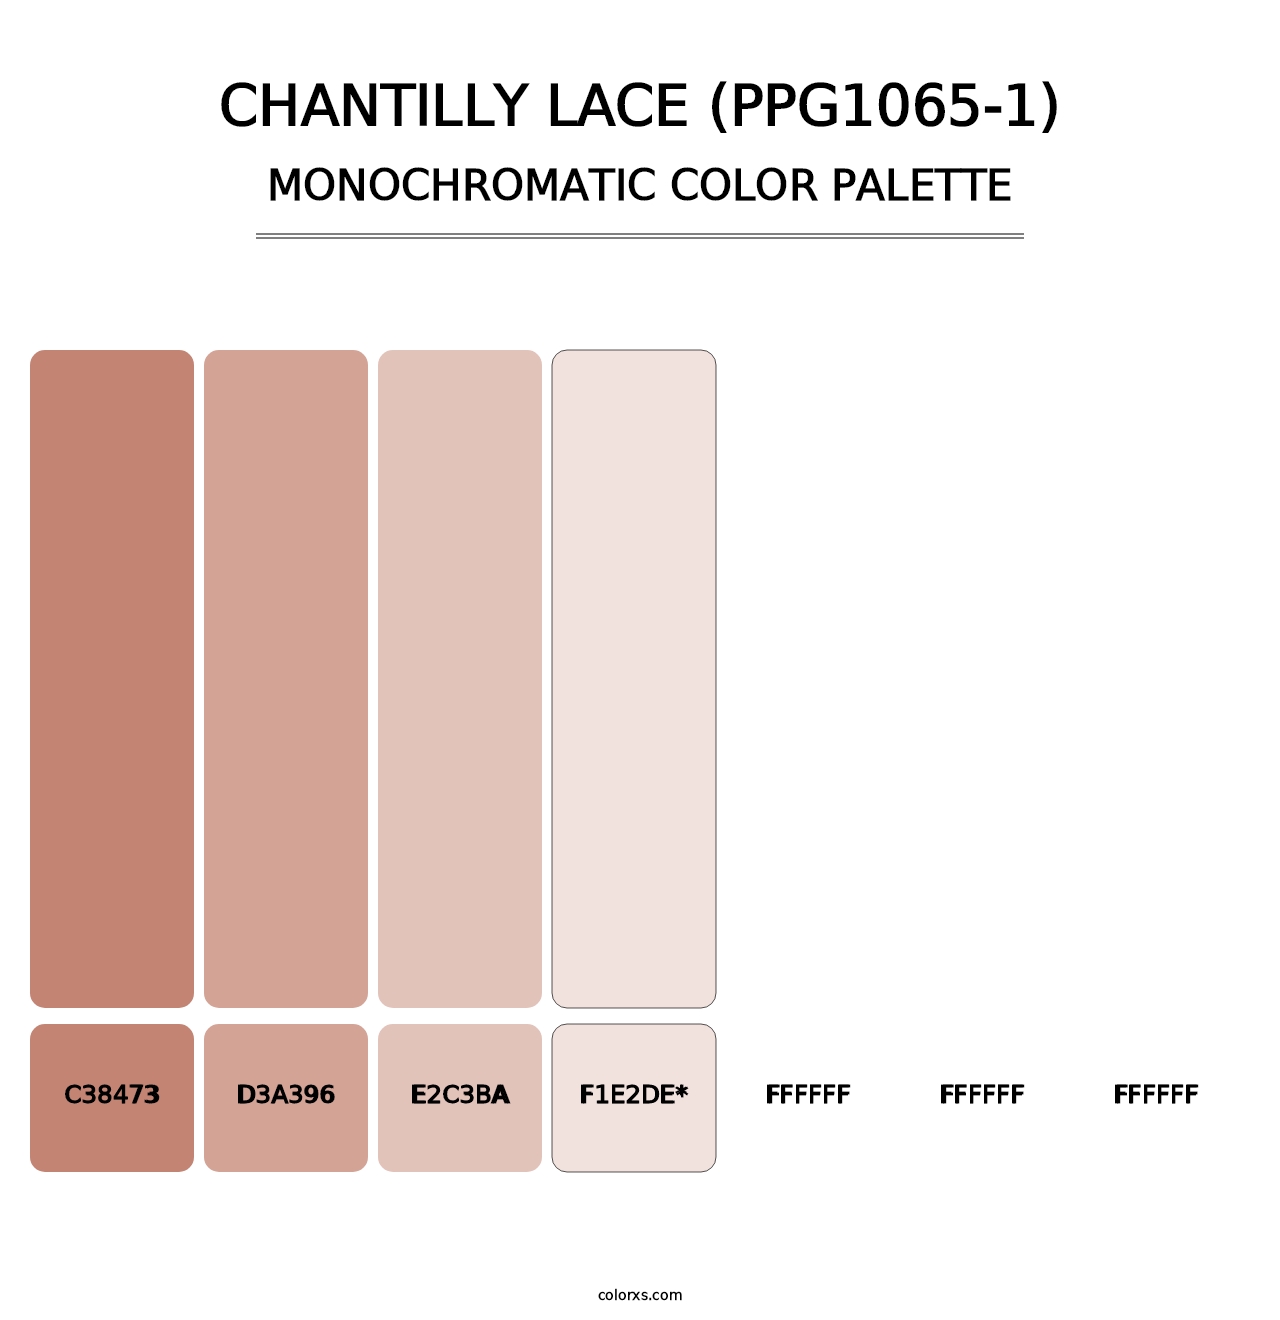 Chantilly Lace (PPG1065-1) - Monochromatic Color Palette